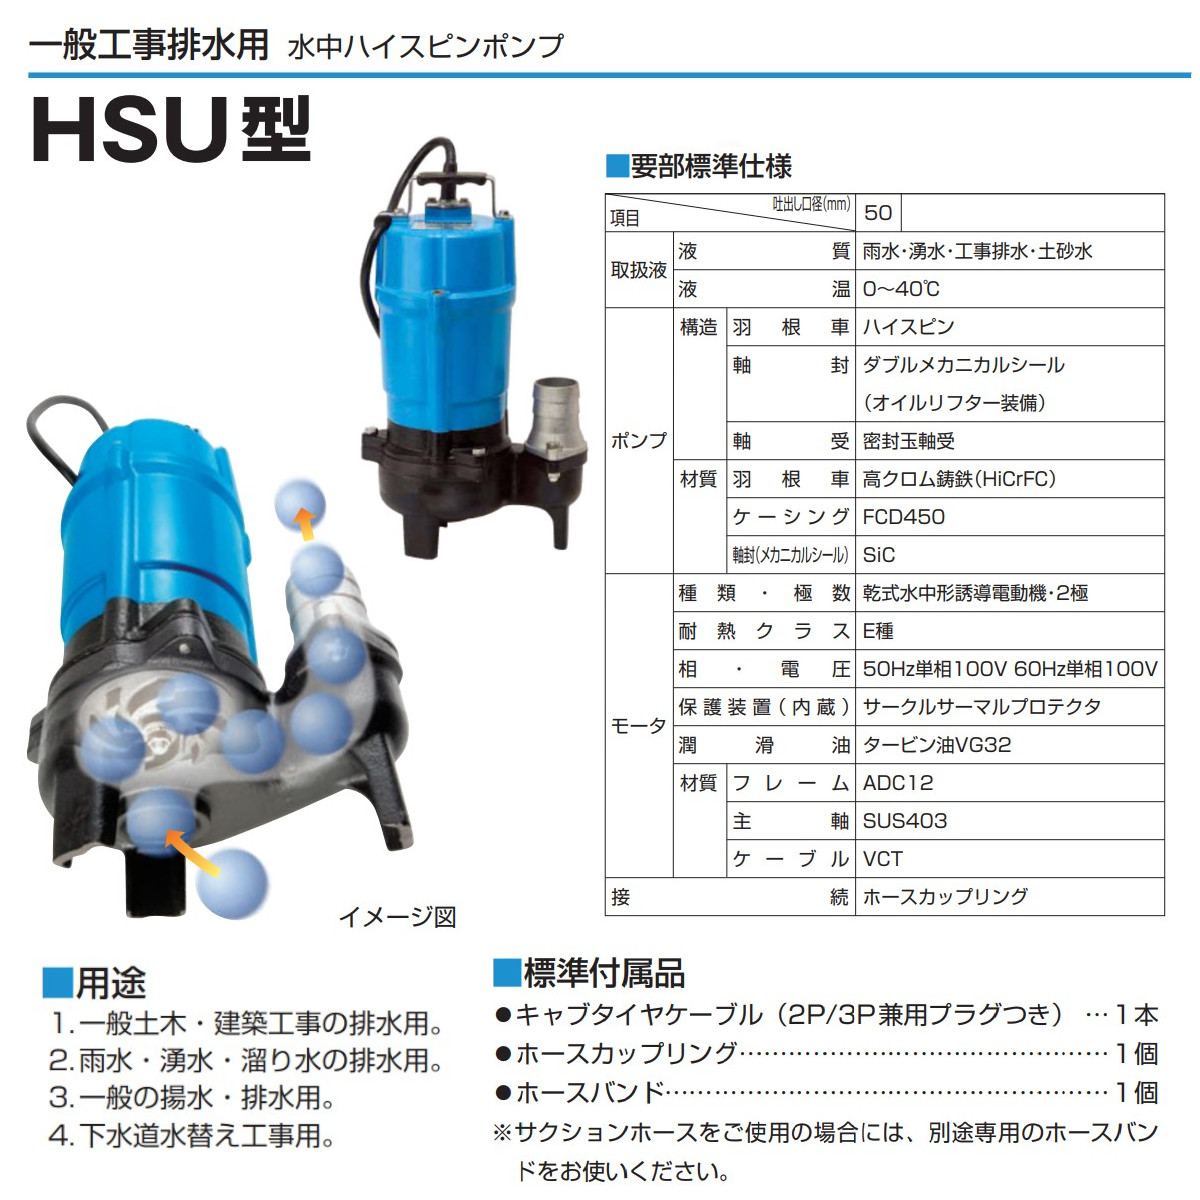 ツルミ 水中ポンプ HSU2.55S 異物通過径30mm 単相100V 60Hz/50Hz一般土木 建設 下水道水替え 非自動 ツルミポンプ 排水  排水用 排水用ポンプ ポンプ